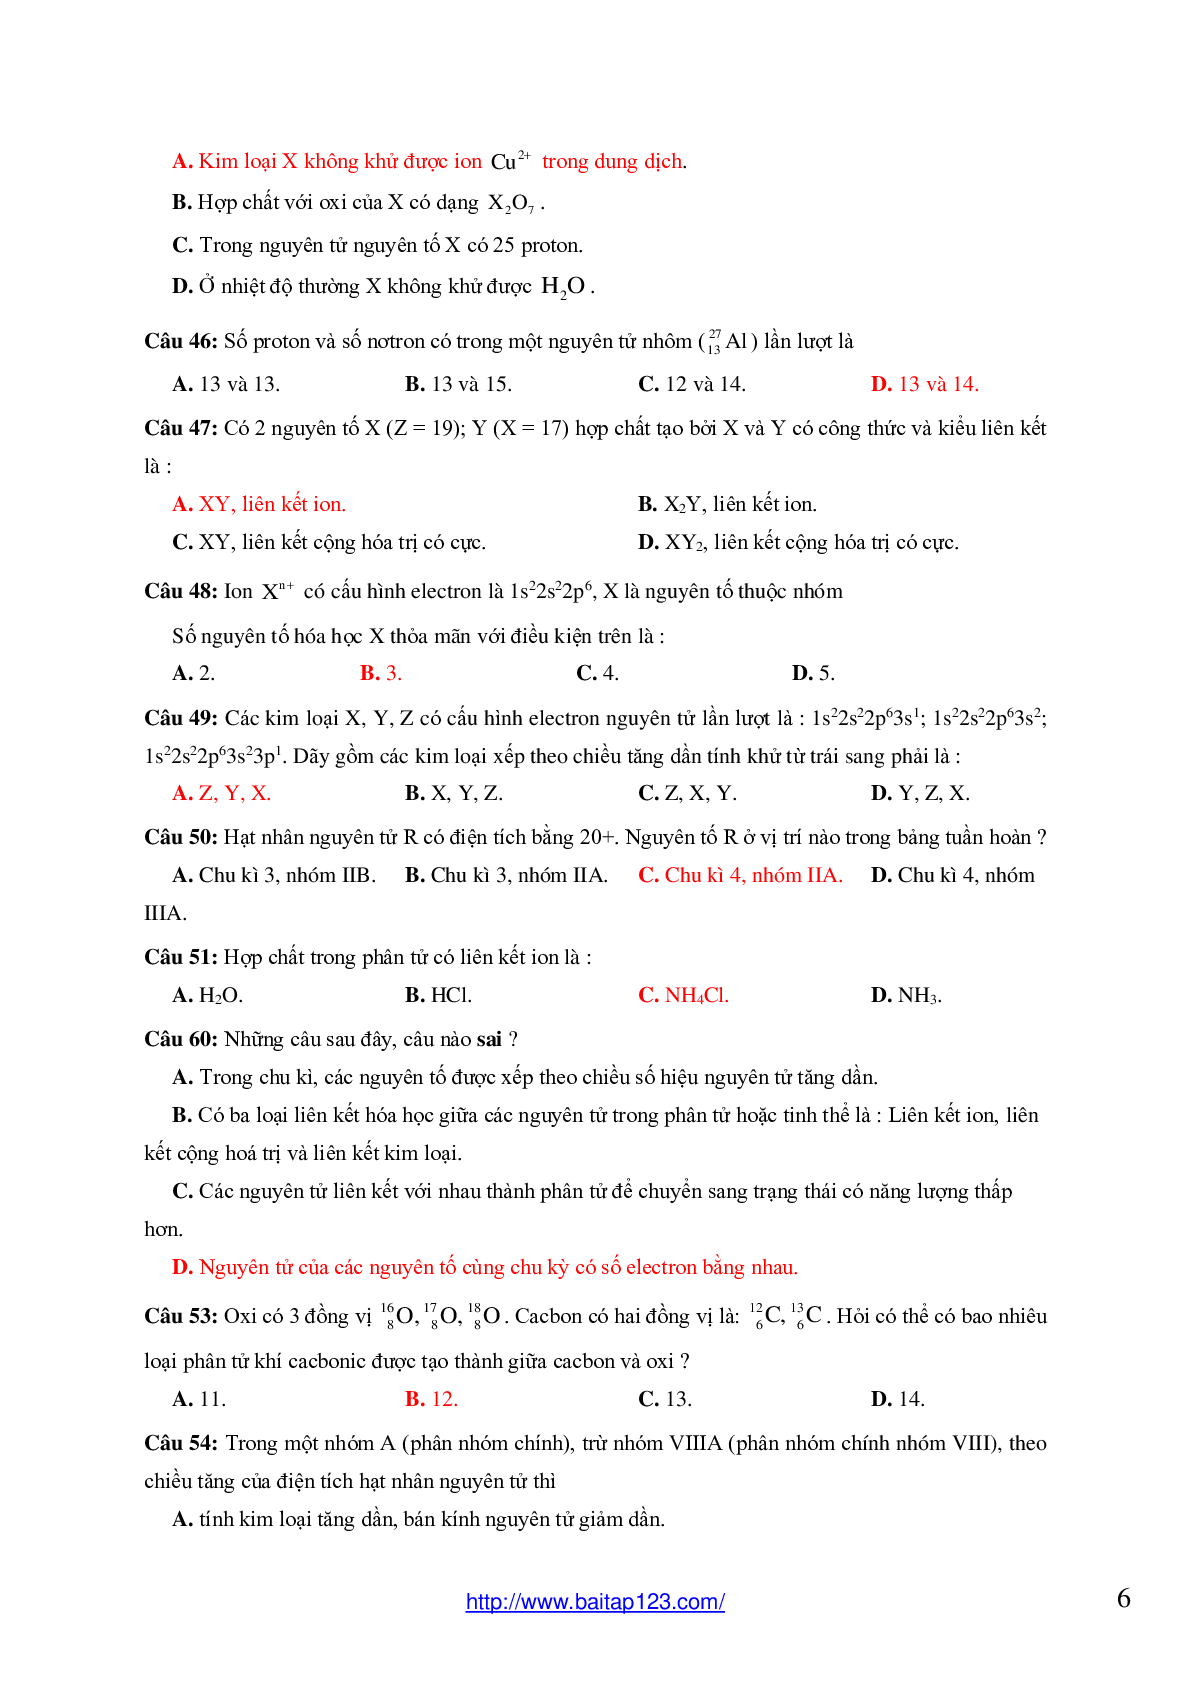 59 câu bài tập trắc nghiệm Nguyên tử - Bảng tuần hoàn - Liên kết hóa học có đáp án môn Hóa lớp 10 (trang 6)